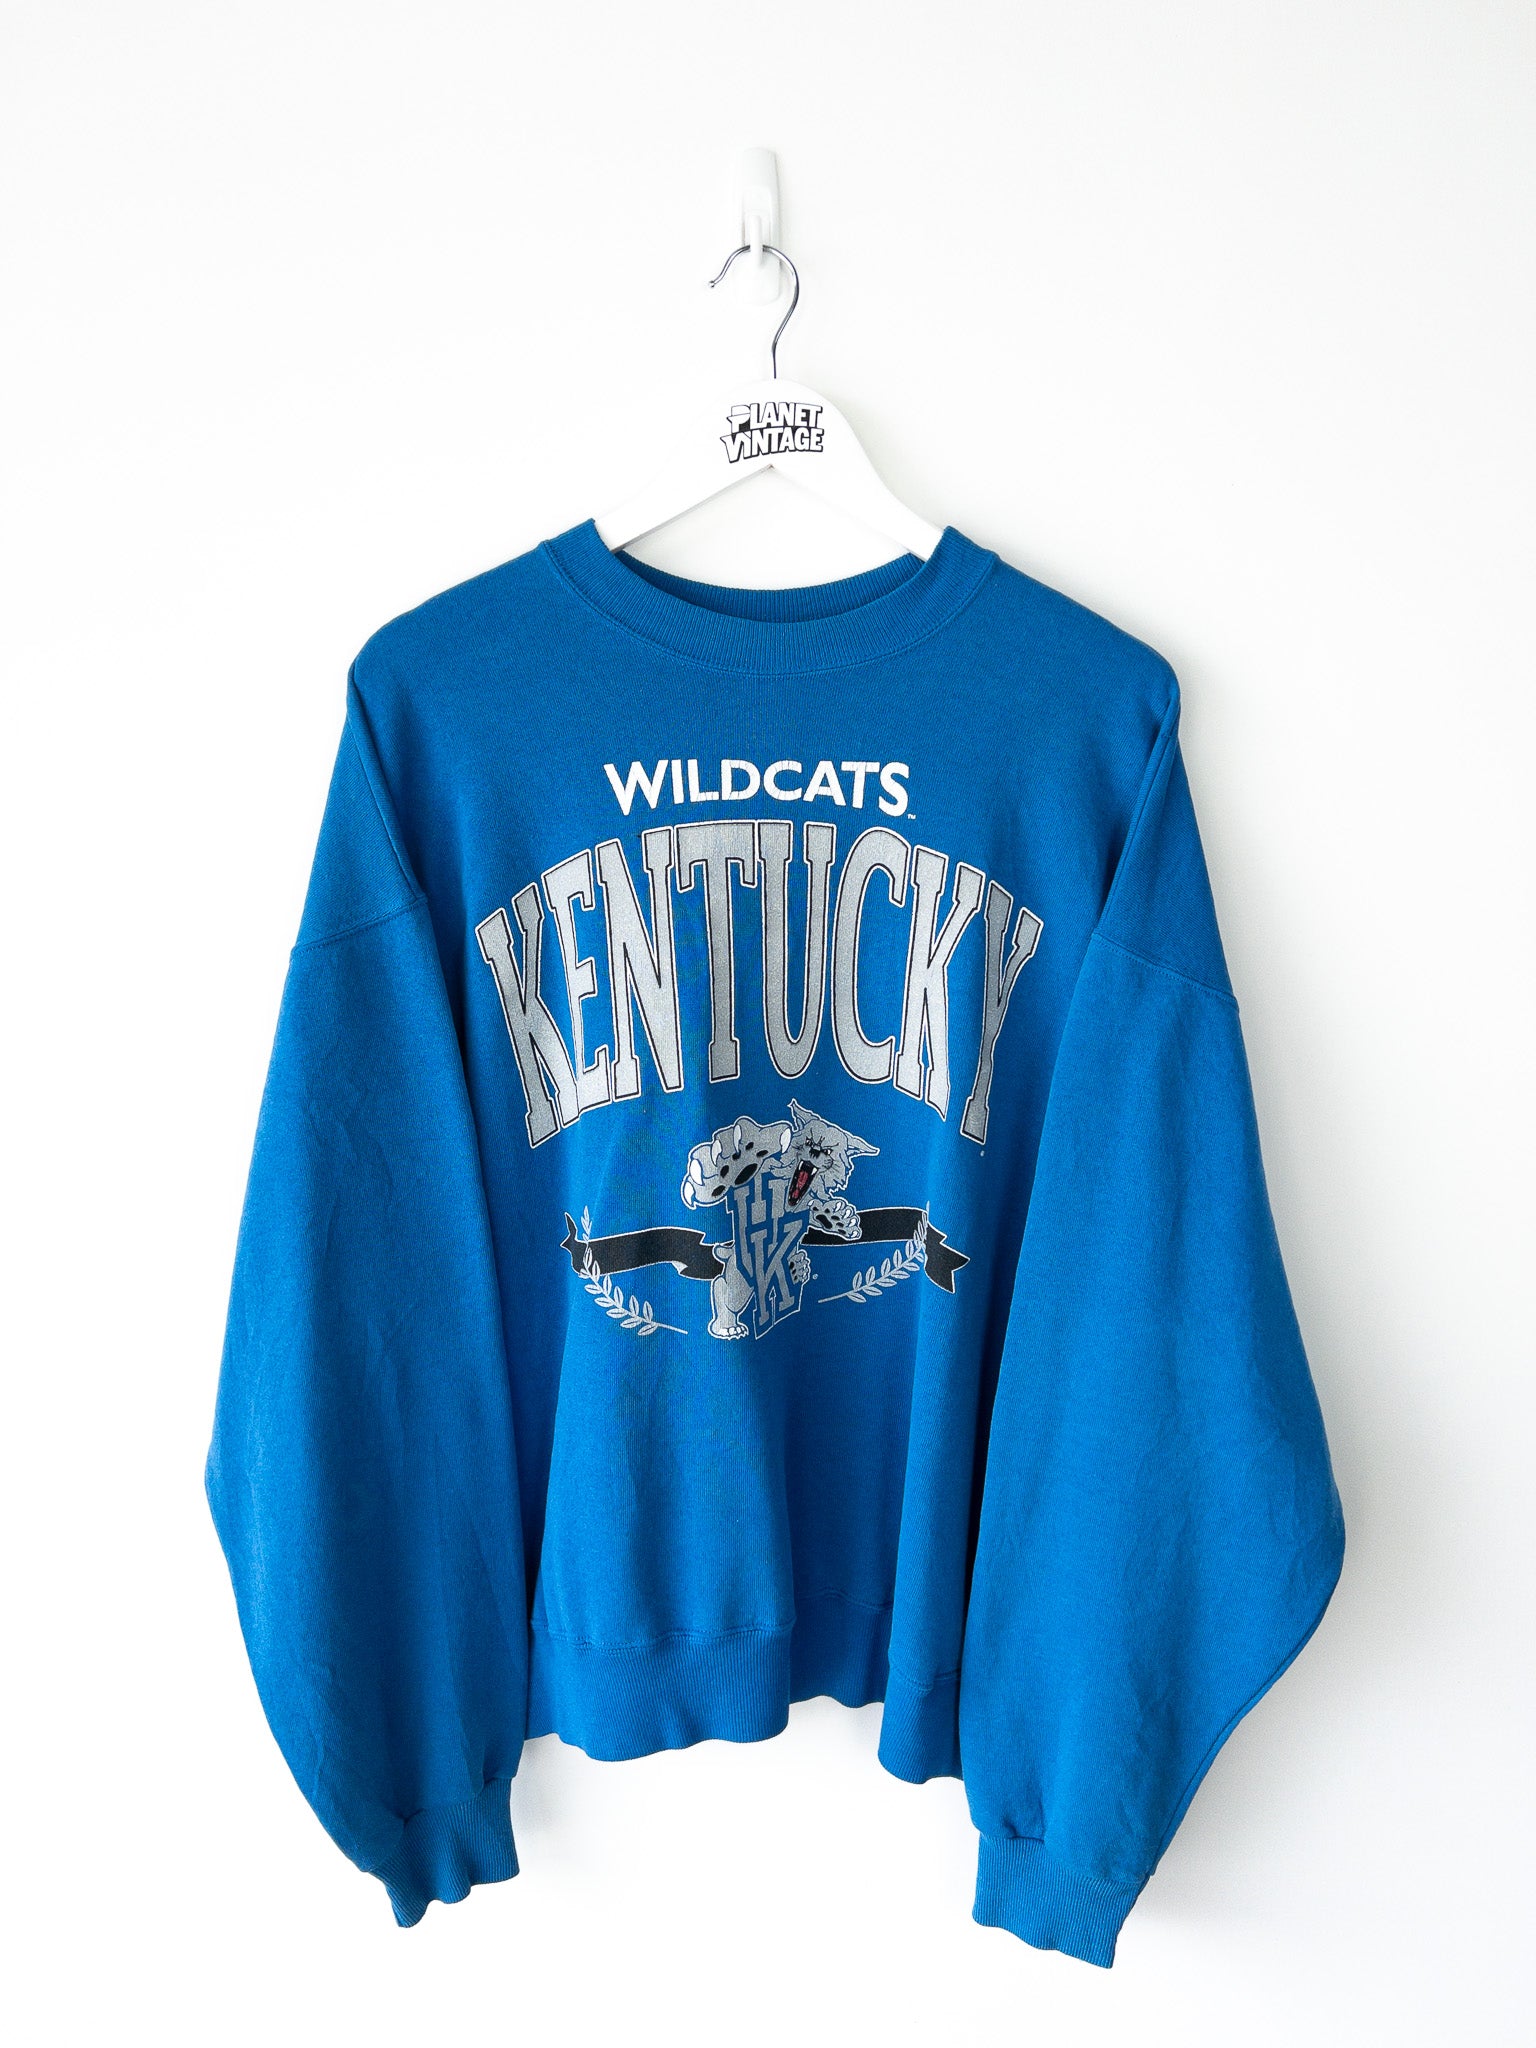 Vintage Kentucky Wildcats Sweatshirt (XL)